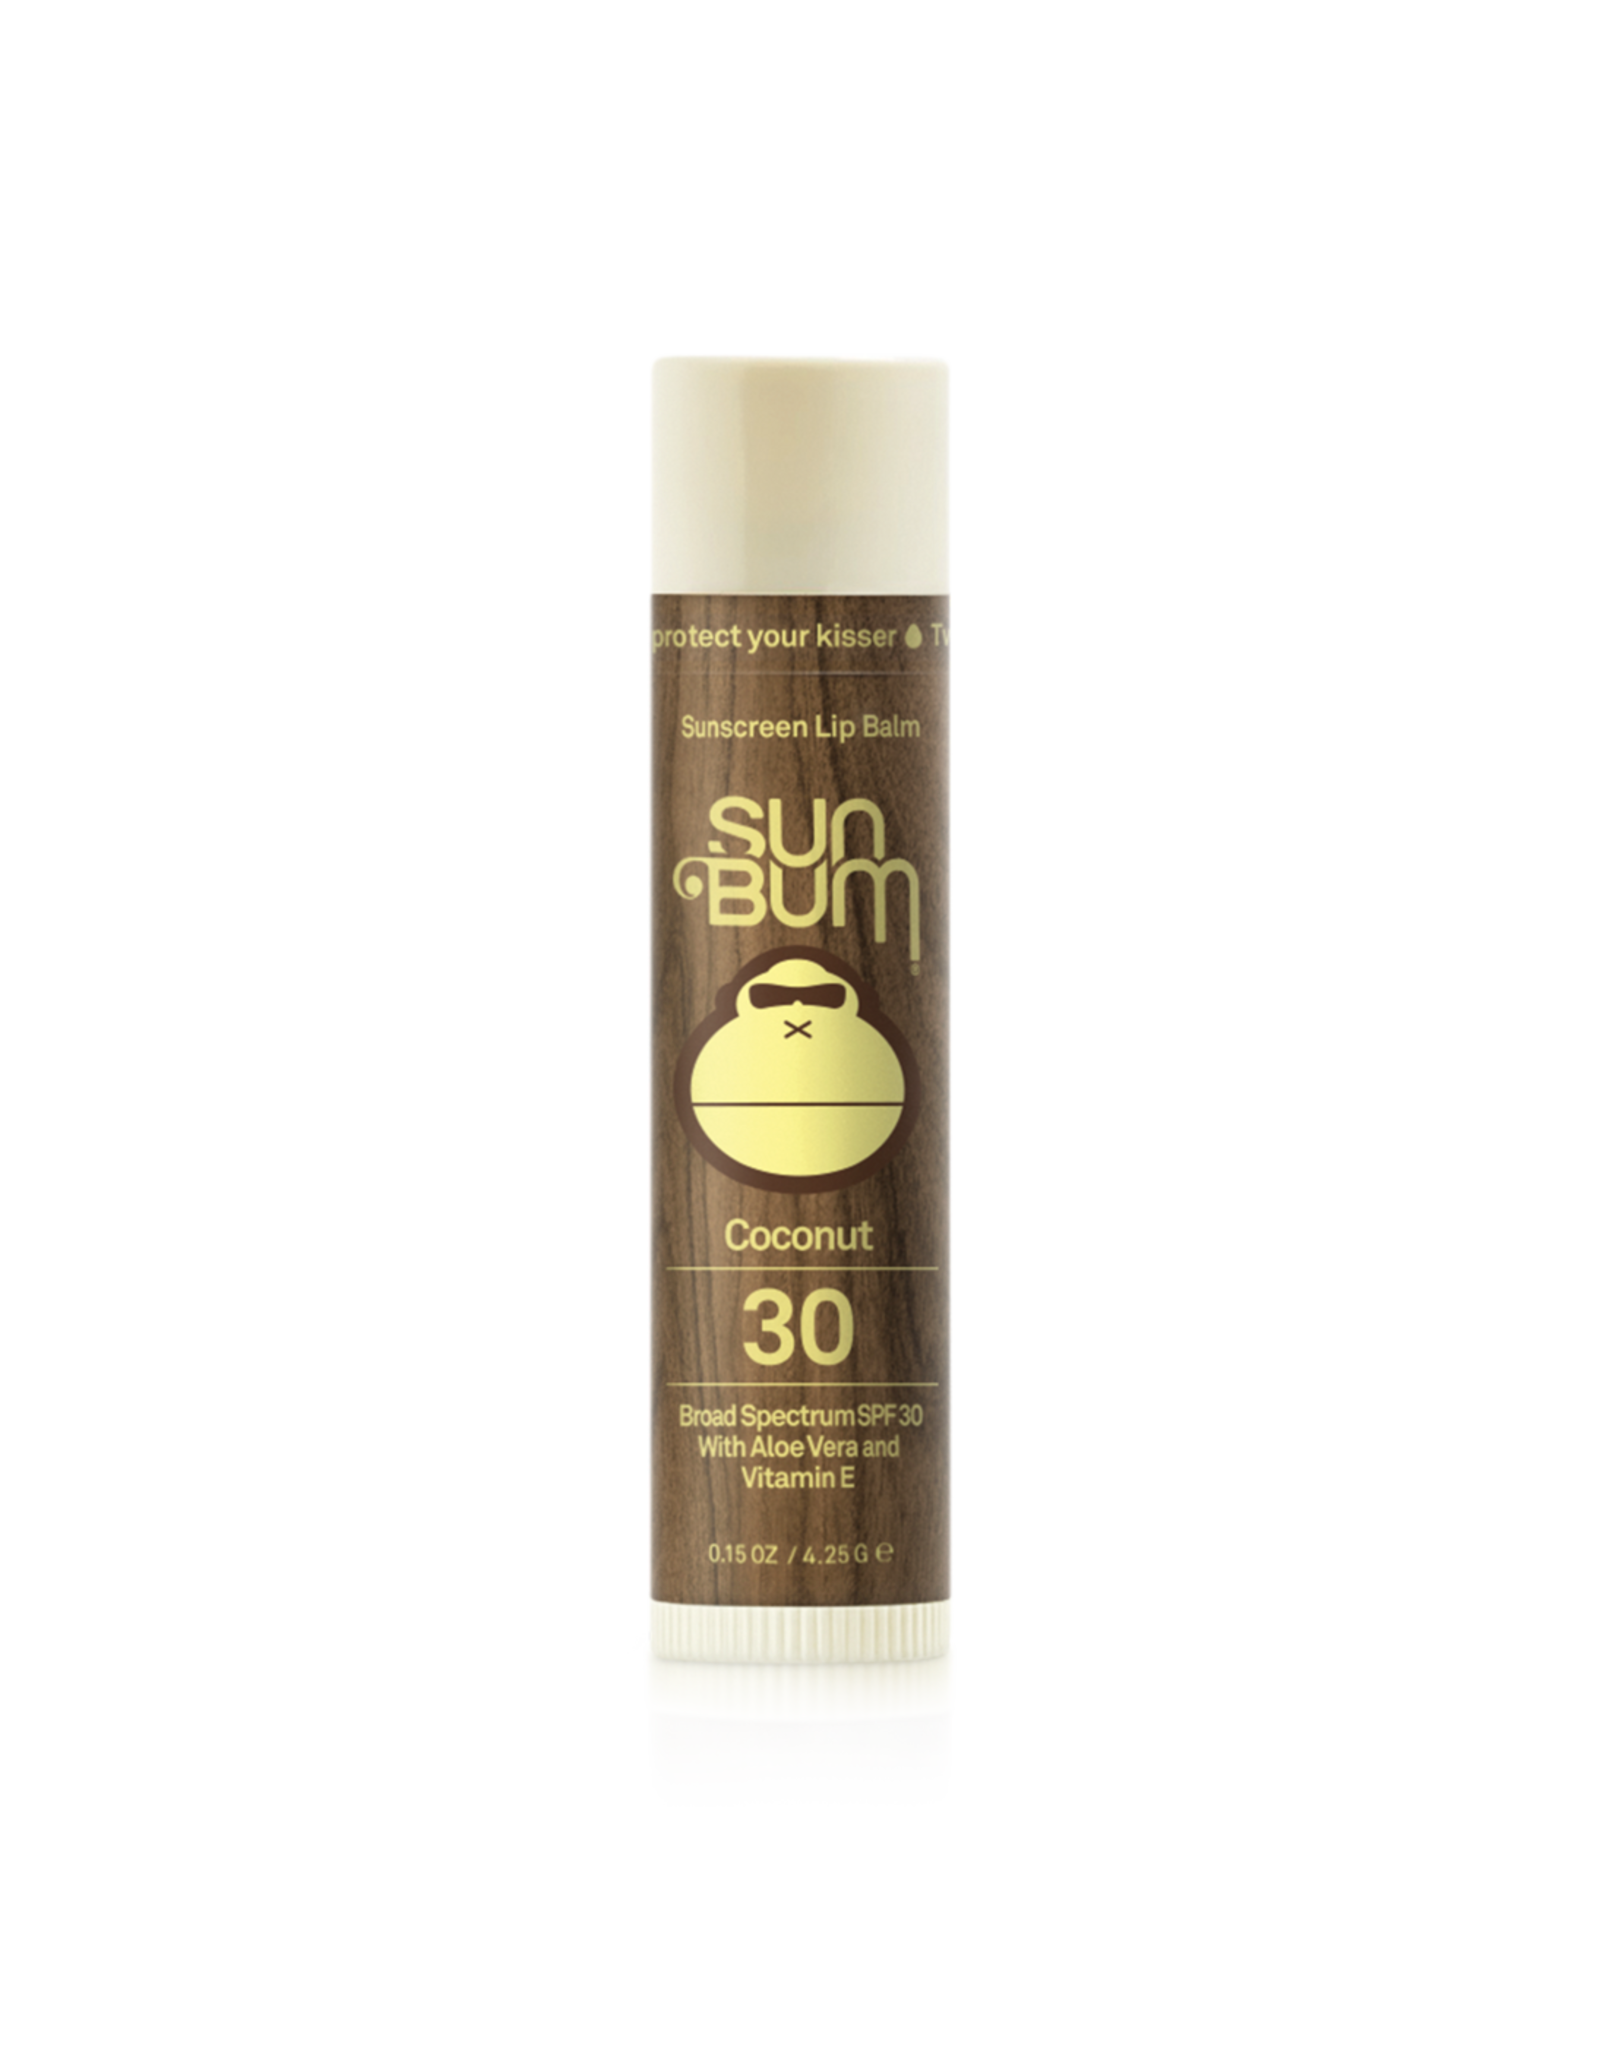 SunBum Sunbum SPF 30 Coconut Lip Balm